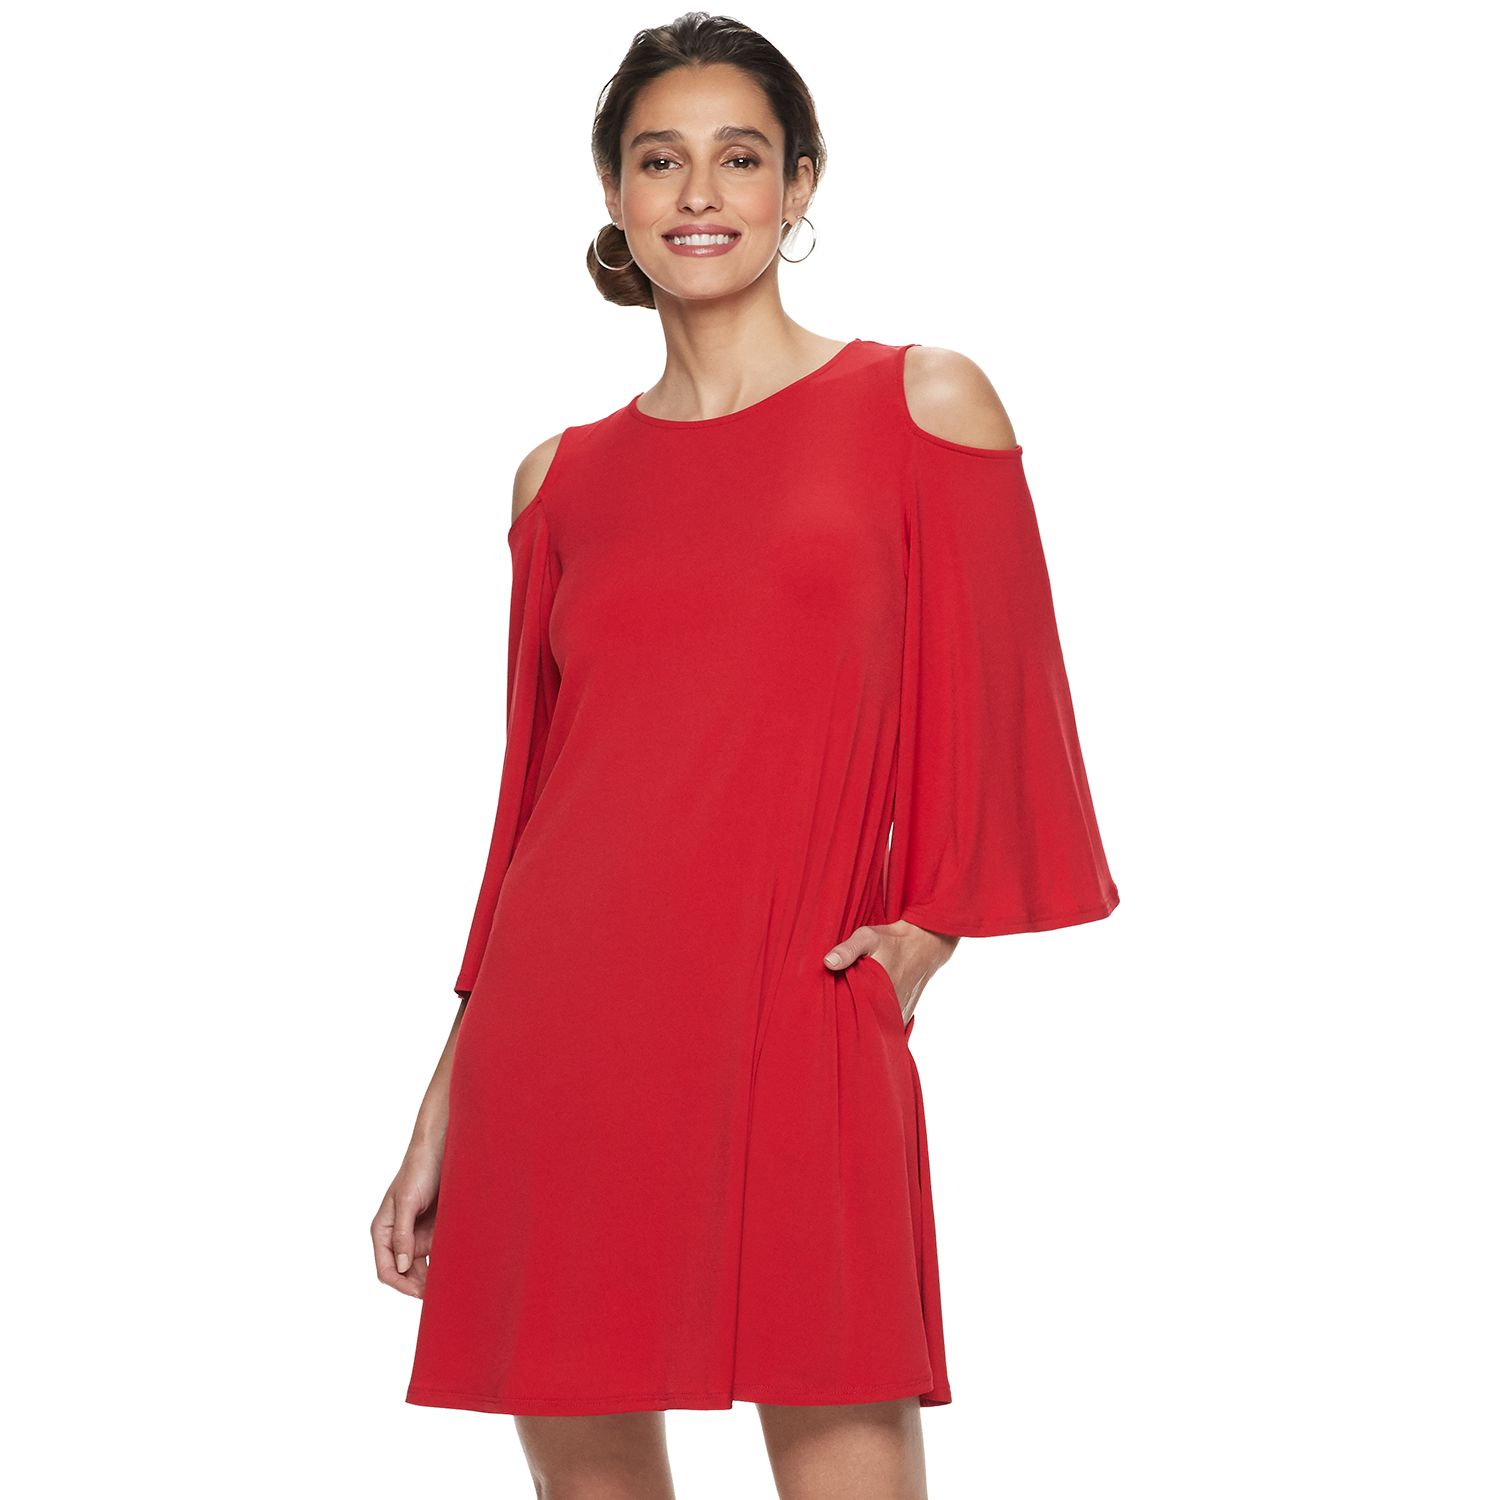 Red Dresses for Women | Kohl's